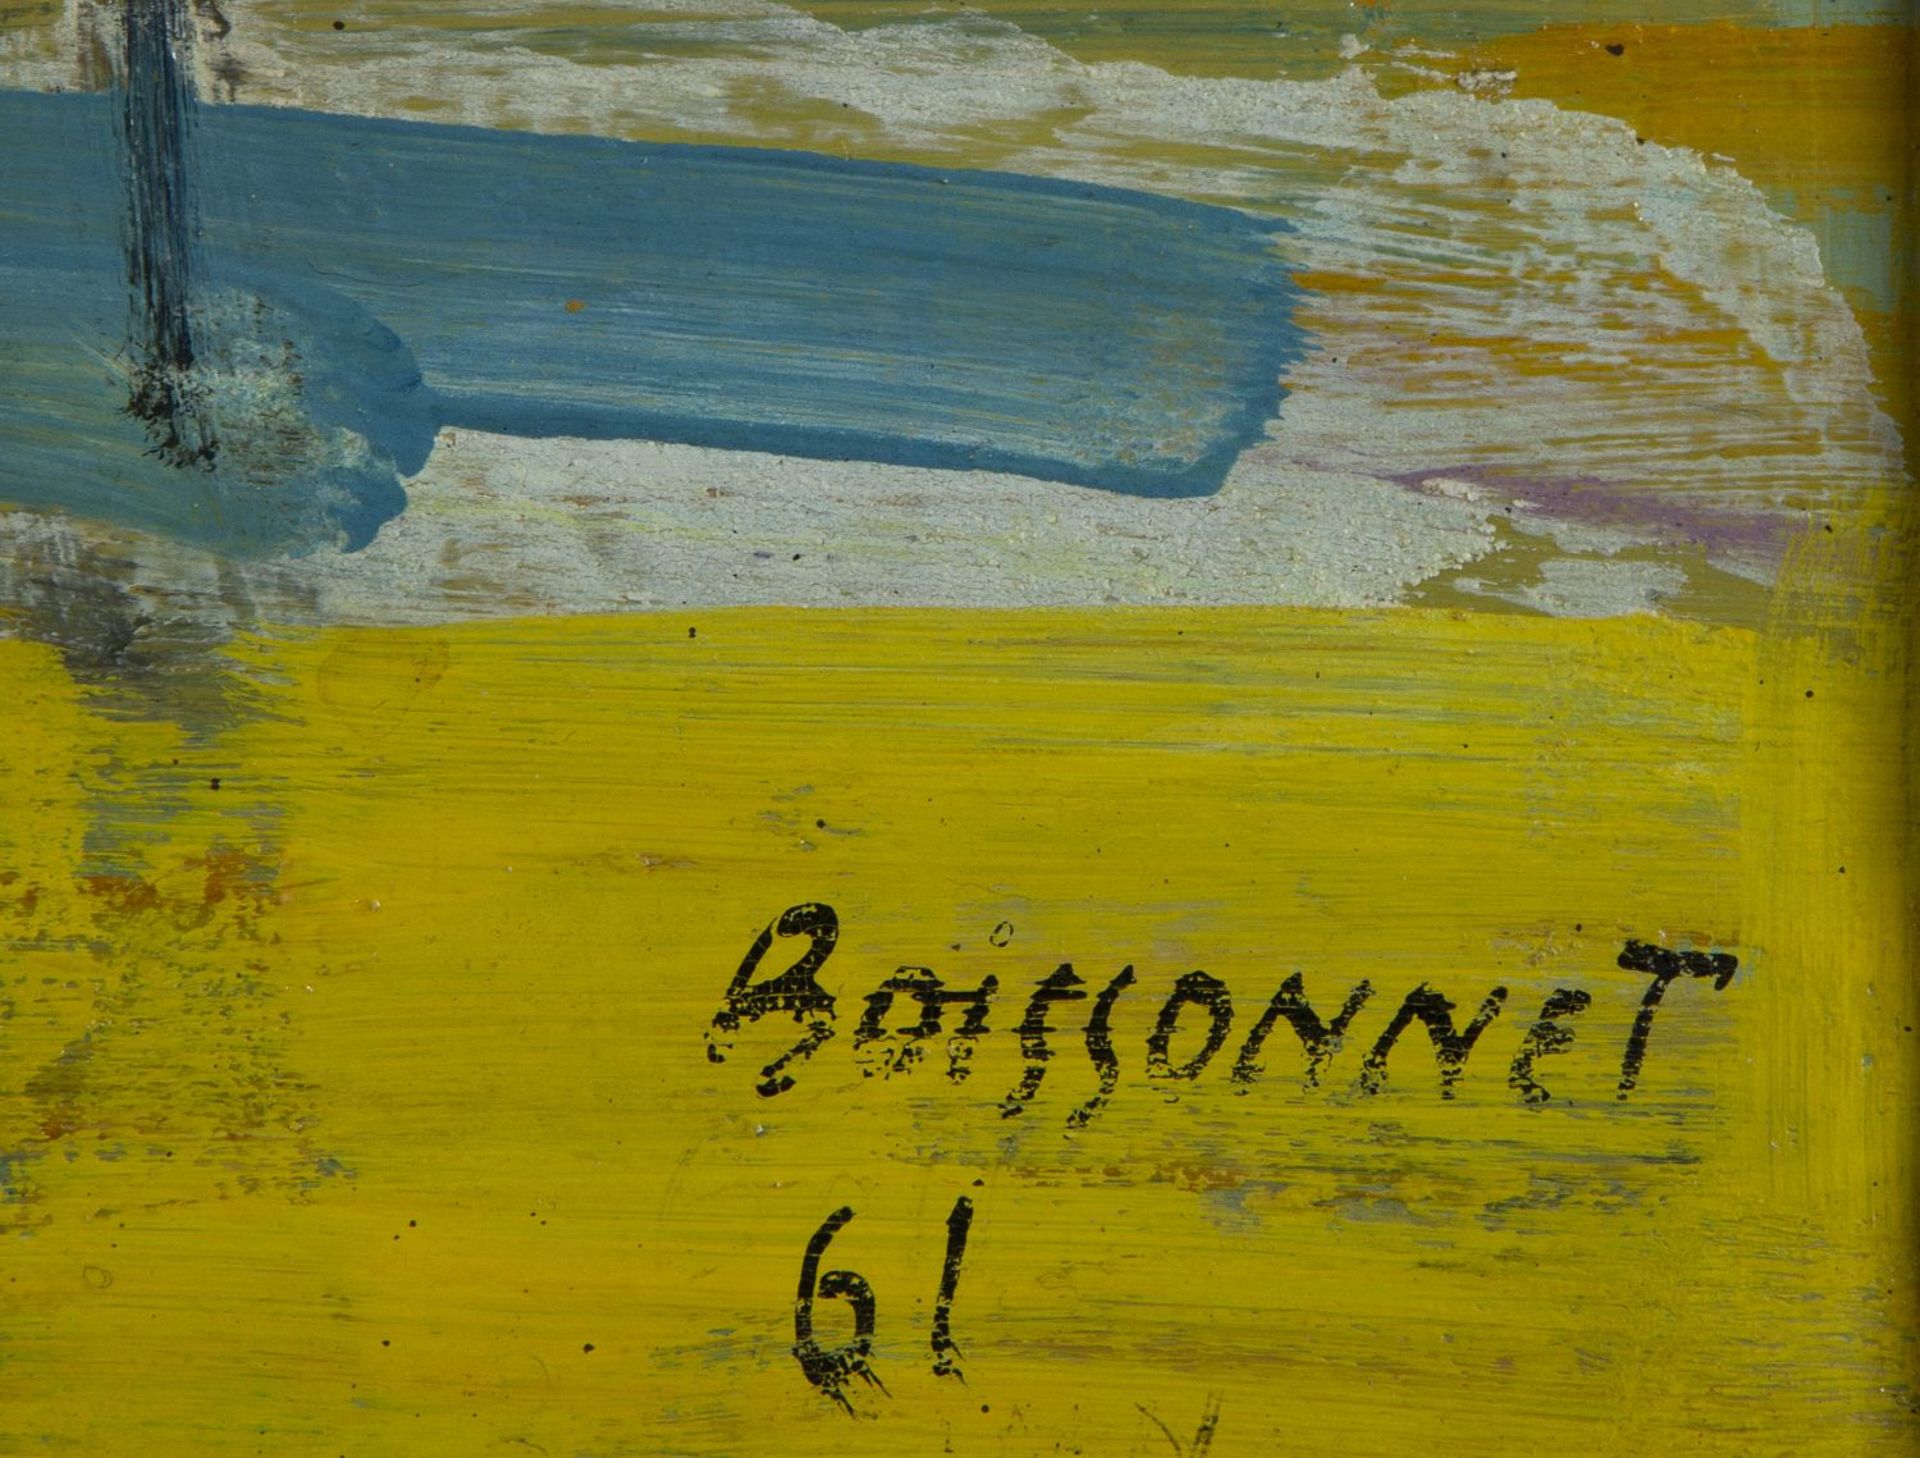 Boissonnet - Image 2 of 4